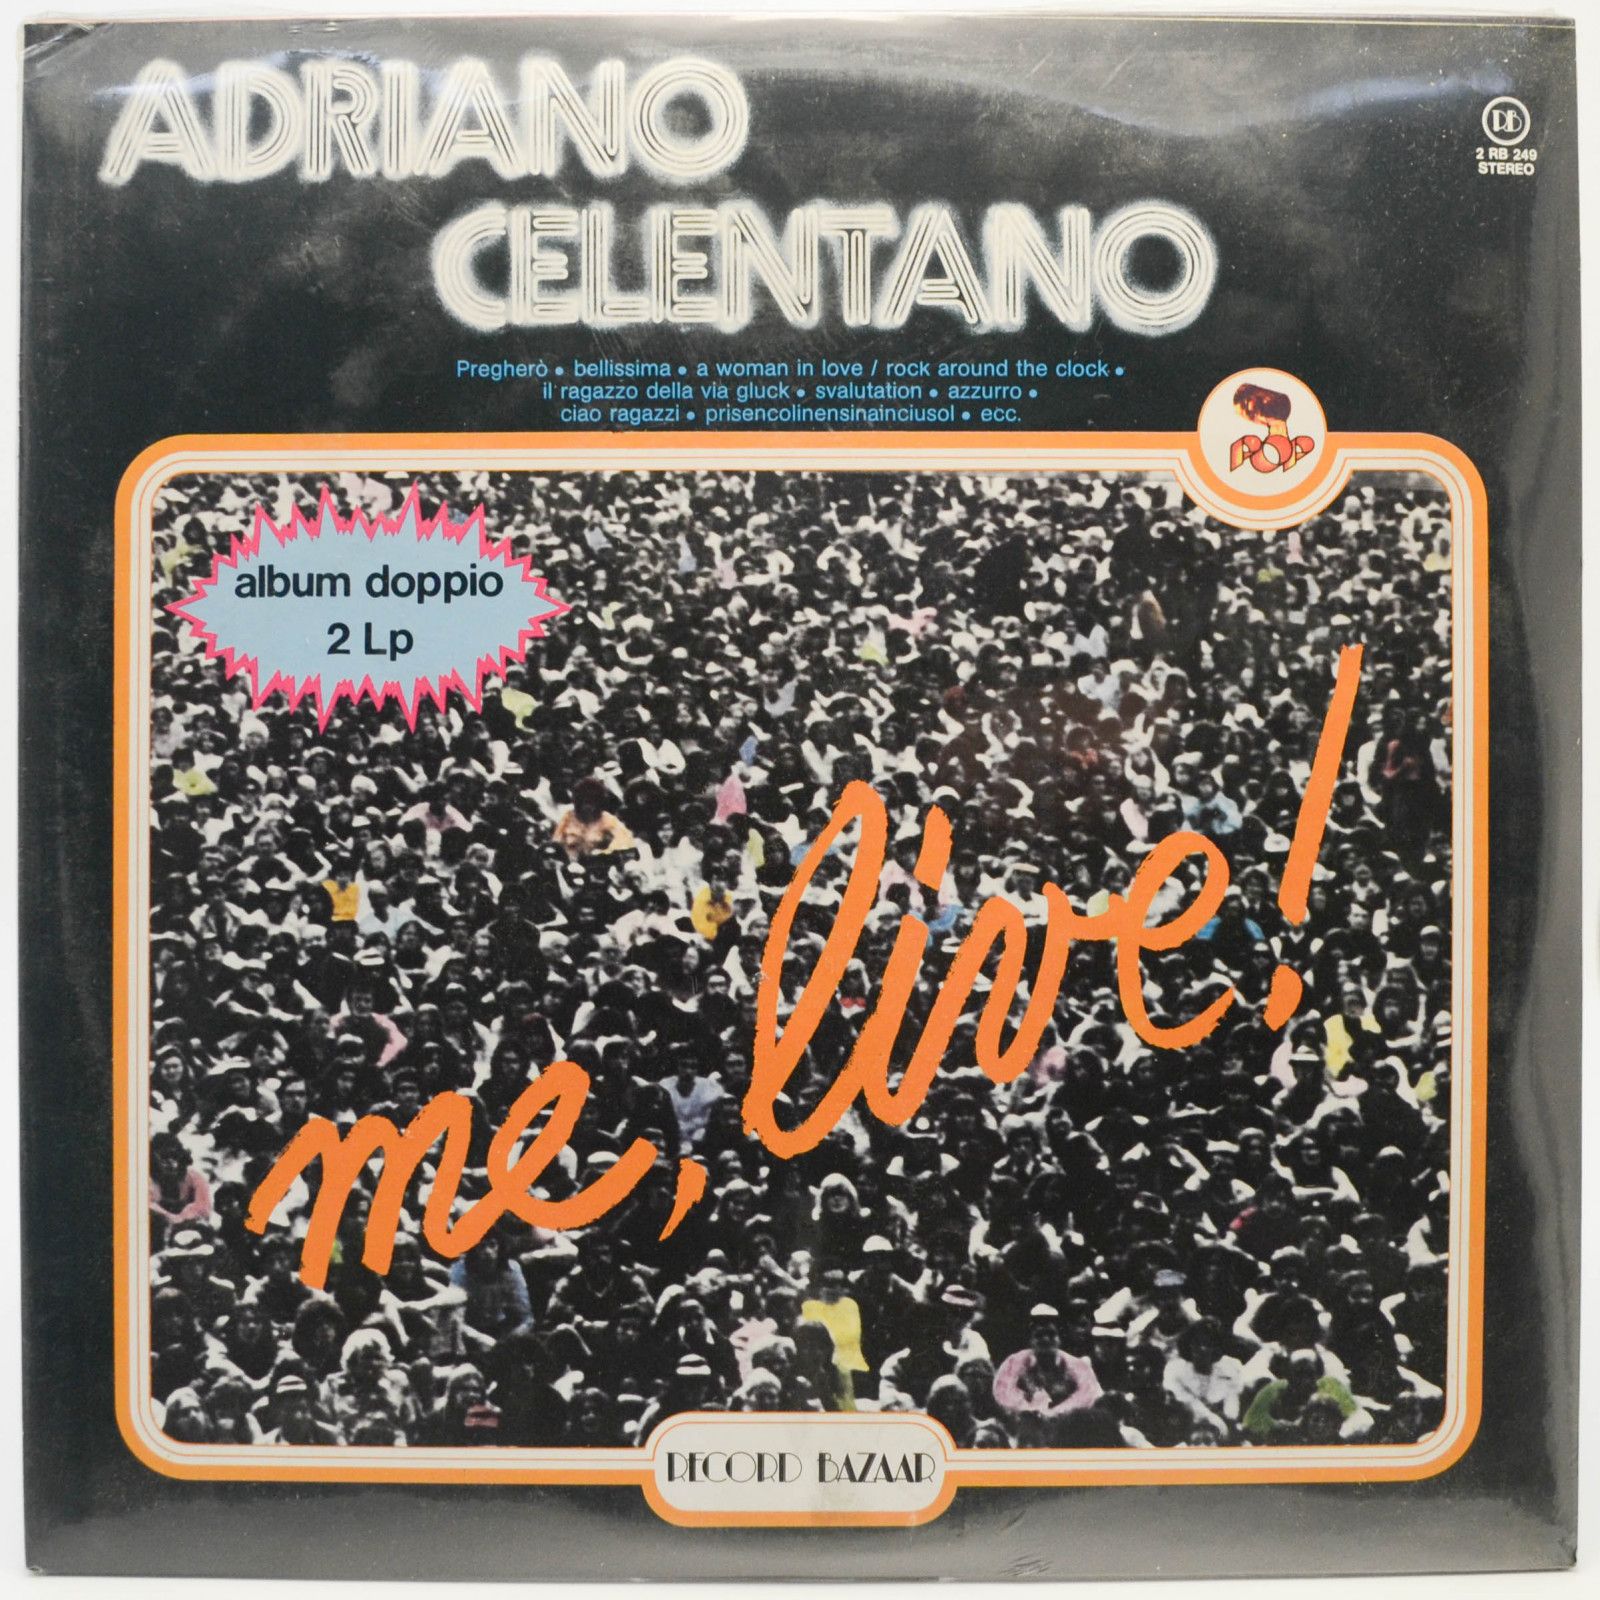 Adriano Celentano — Me, Live (2LP, 1-st, Italy), 1980